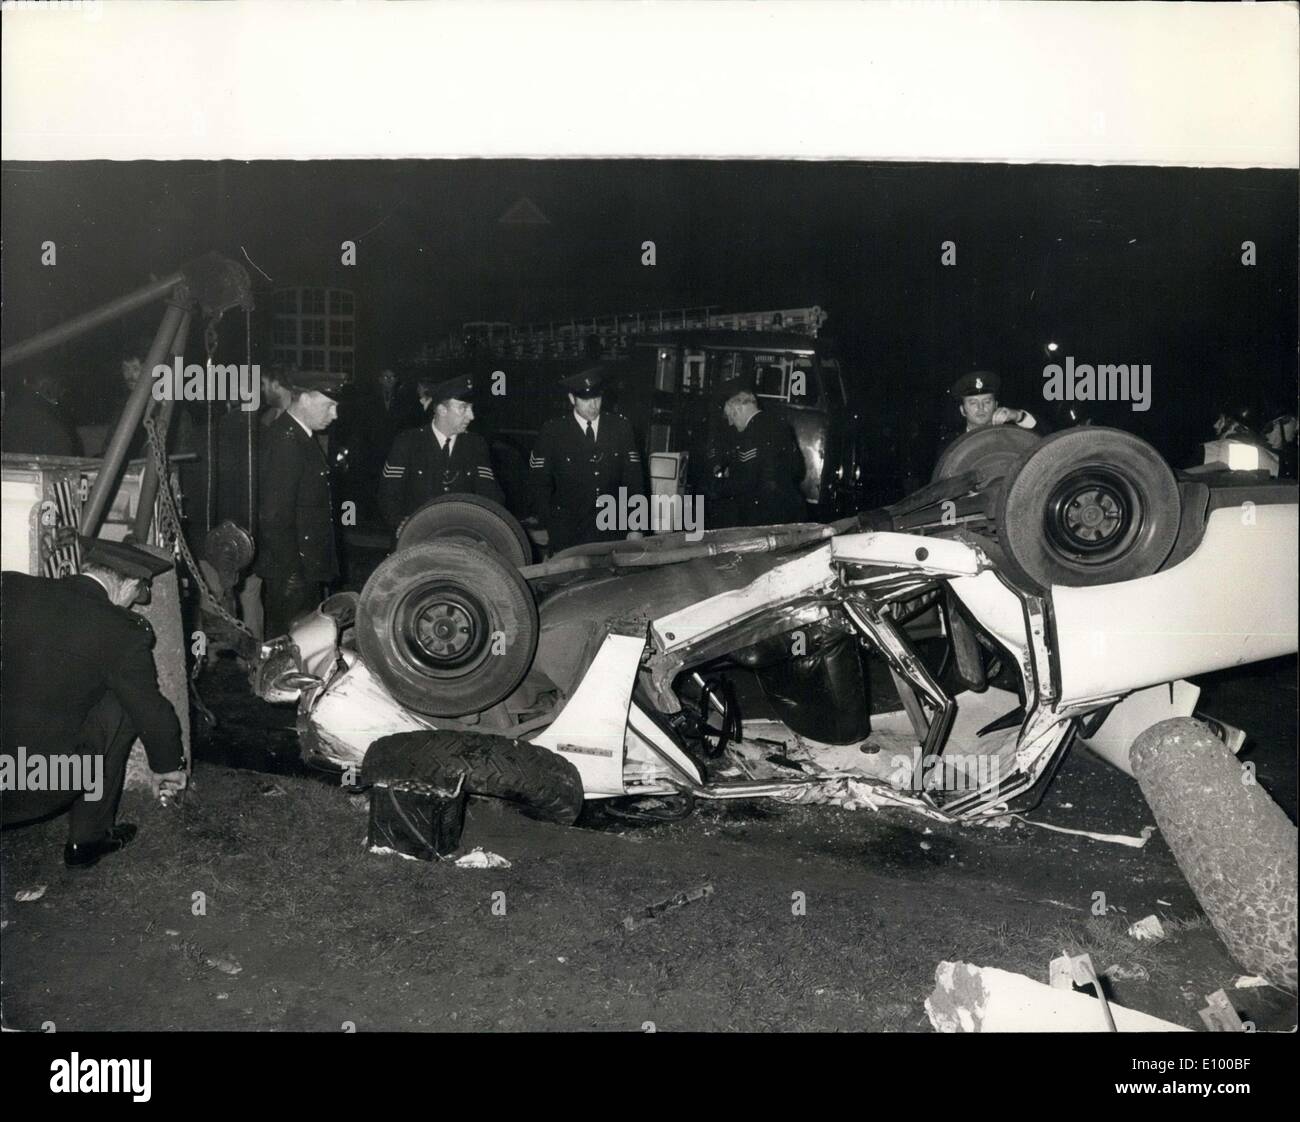 6. Januar 1972 - Polizist stirbt als Barmherzigkeit Dash Auto Hits Post.: Ein Polizei Auto stürzte ein kardiale Techniker von London nach Surrey für einen Notfall Herz Fall schlagen einen Laternenpfahl und hob nur 100 Yards von seinem Ziel, letzte Nacht. Der Polizei-Fahrer wurde getötet, aber die Techniker - eine Frau- und eine Krankenschwester entging Verletzungen. Der Aufruf für das Herz-Team wurde von St.-Petri Hospital, Chertsey, St.-Georgs Hospital, Hyde Park Corner. Zwei Londoner Polizeiautos waren Caloed, als Eskorte und anderen, die Techniker, Schwester und die Ausrüstung zu tragen. Ein Sprecher bei St Stockfoto